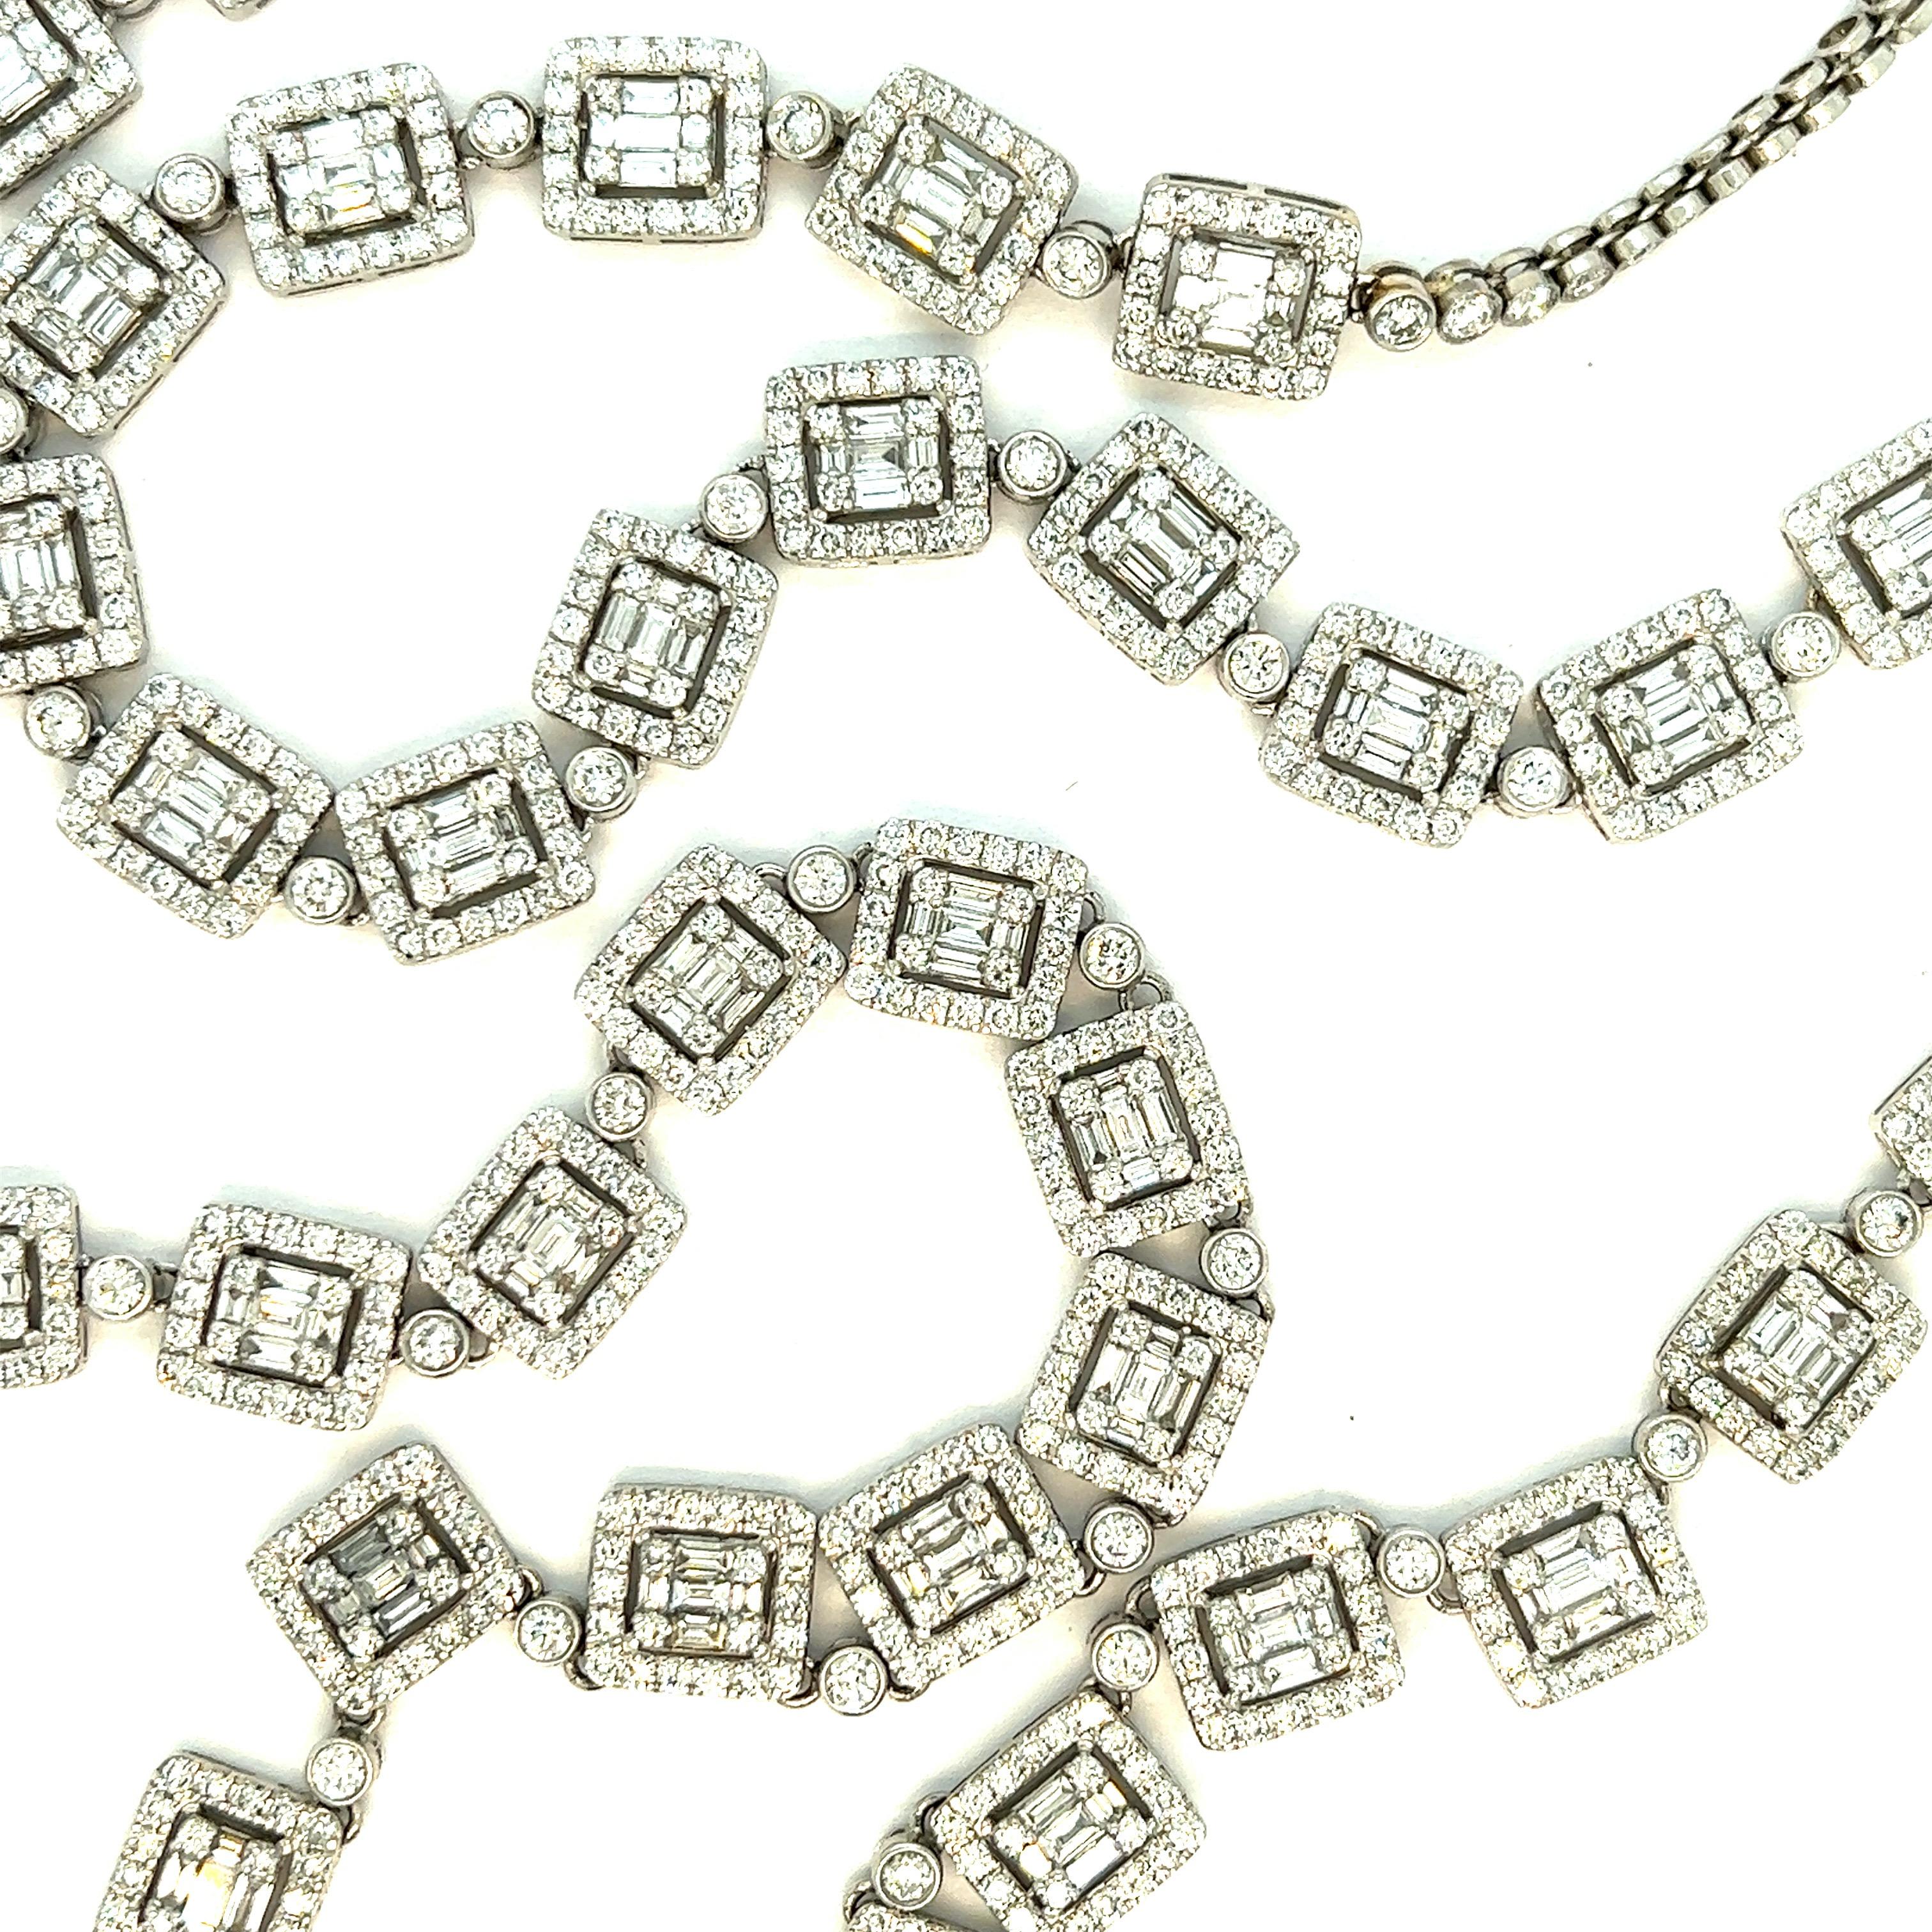 Diamant Weißgold lange Halskette

Diamanten im Rund- und Baguetteschliff von ca. 32 Karat, 18 Karat Weißgold; Kette mit der Bezeichnung 18K

Größe: Breite 0,31 Zoll, Länge 31 Zoll
Gesamtgewicht: 69,3 Gramm